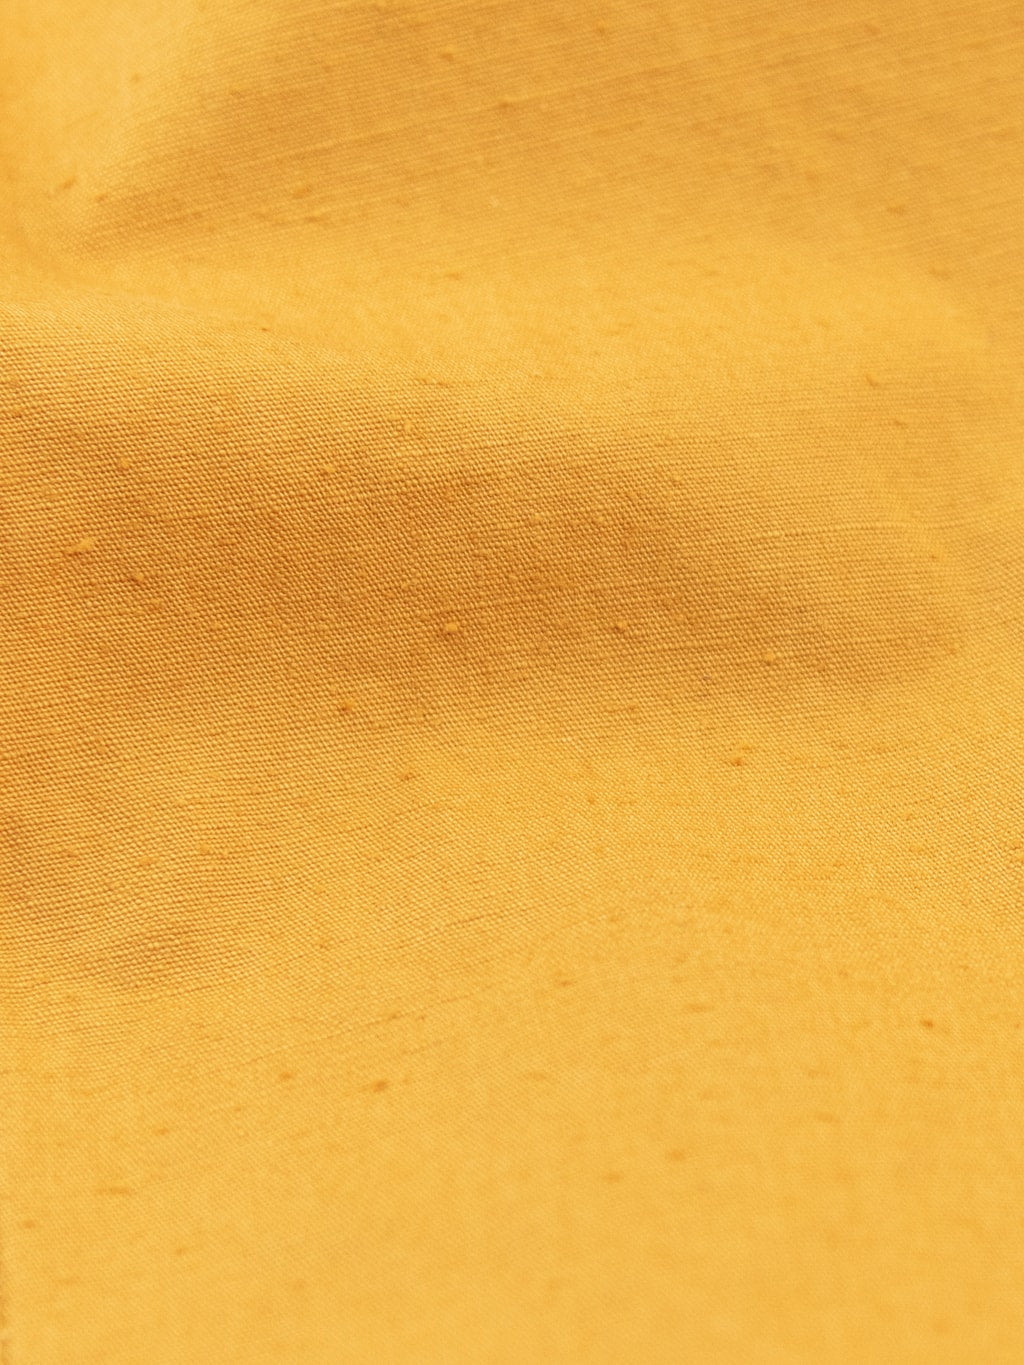 ues denim mechanic shirt sleeves shirt pumpkin yellow cotton uneven dye